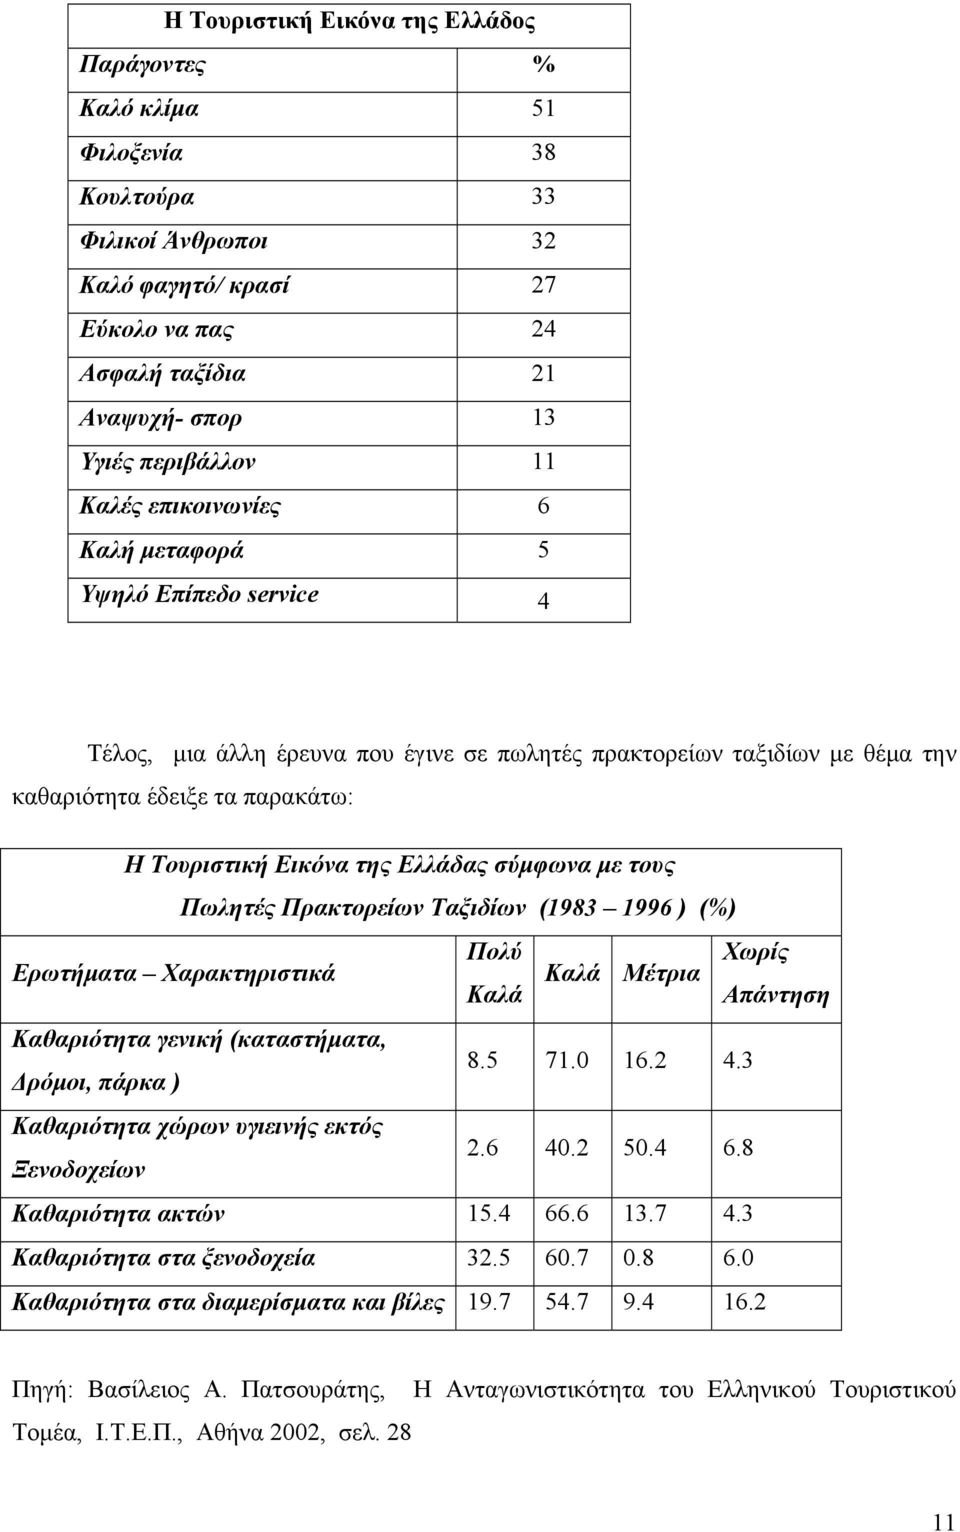 Ελλάδας σύμφωνα με τους Πωλητές Πρακτορείων Ταξιδίων (1983 1996 ) (%) Ερωτήματα Χαρακτηριστικά Πολύ Χωρίς Καλά Καλά Μέτρια Απάντηση Καθαριότητα γενική (καταστήματα, Δρόμοι, πάρκα ) 8.5 71.0 16.2 4.